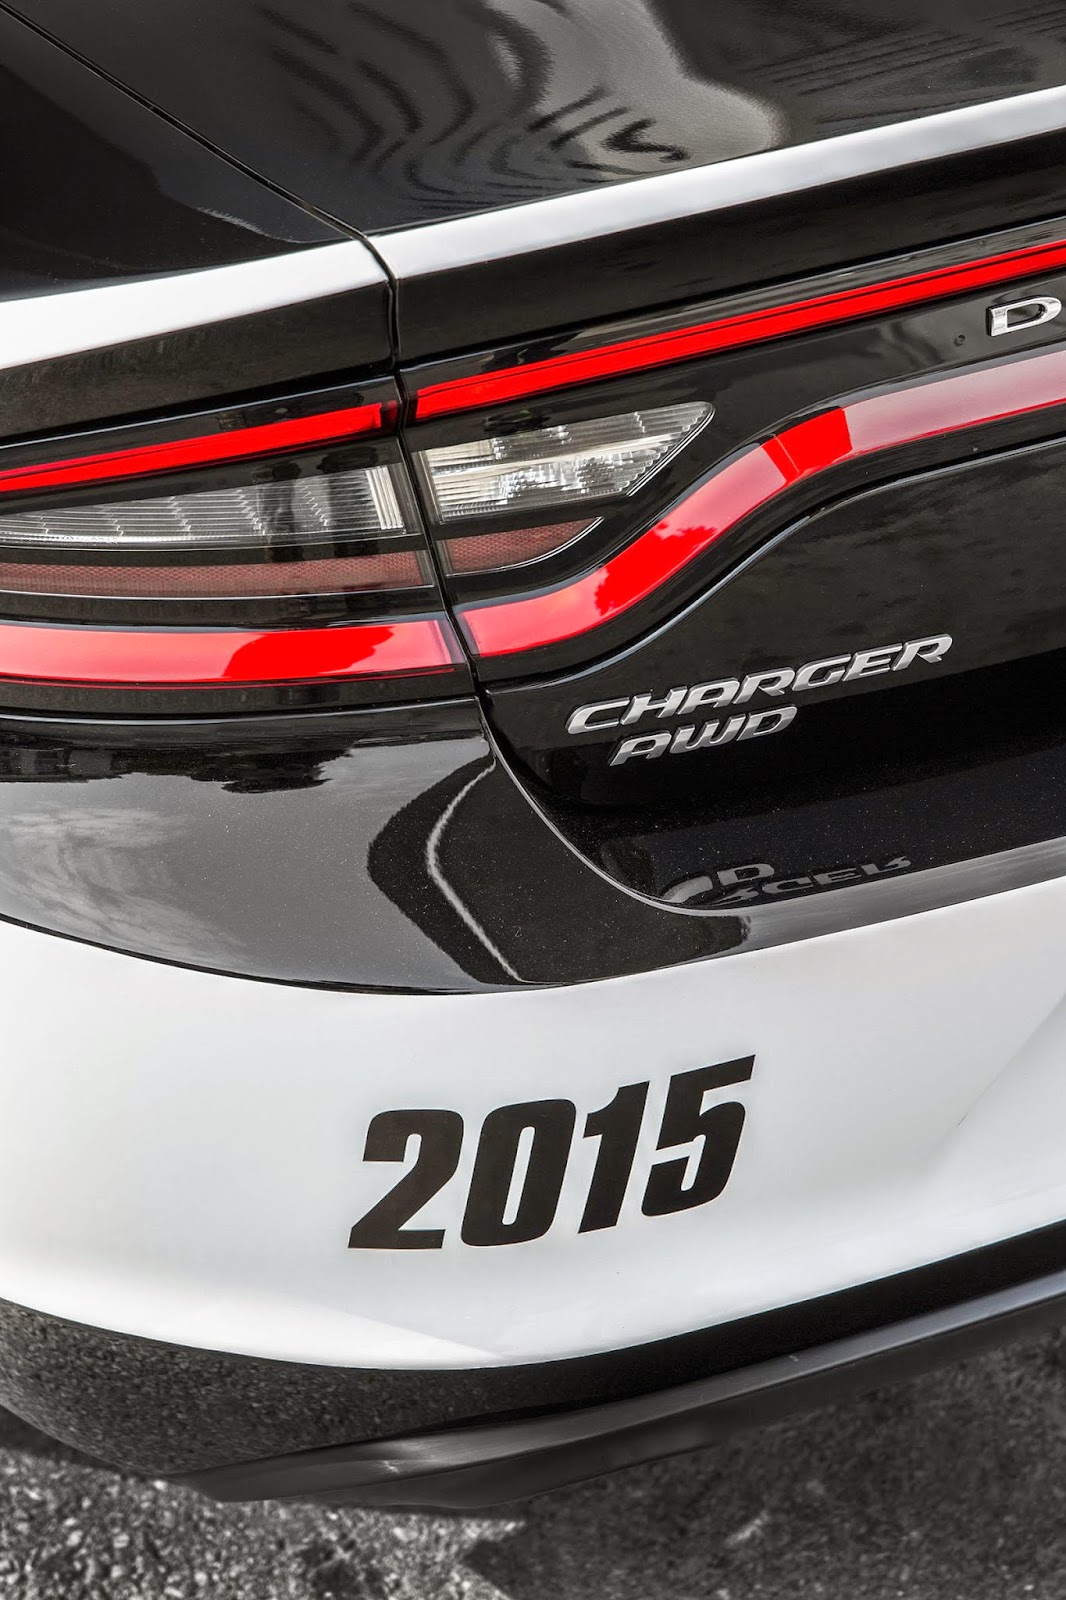 Ultimate Cars - Test Drives & Car Reviews: Dodge Charger Pursuit 2015,  listo para proteger las calles